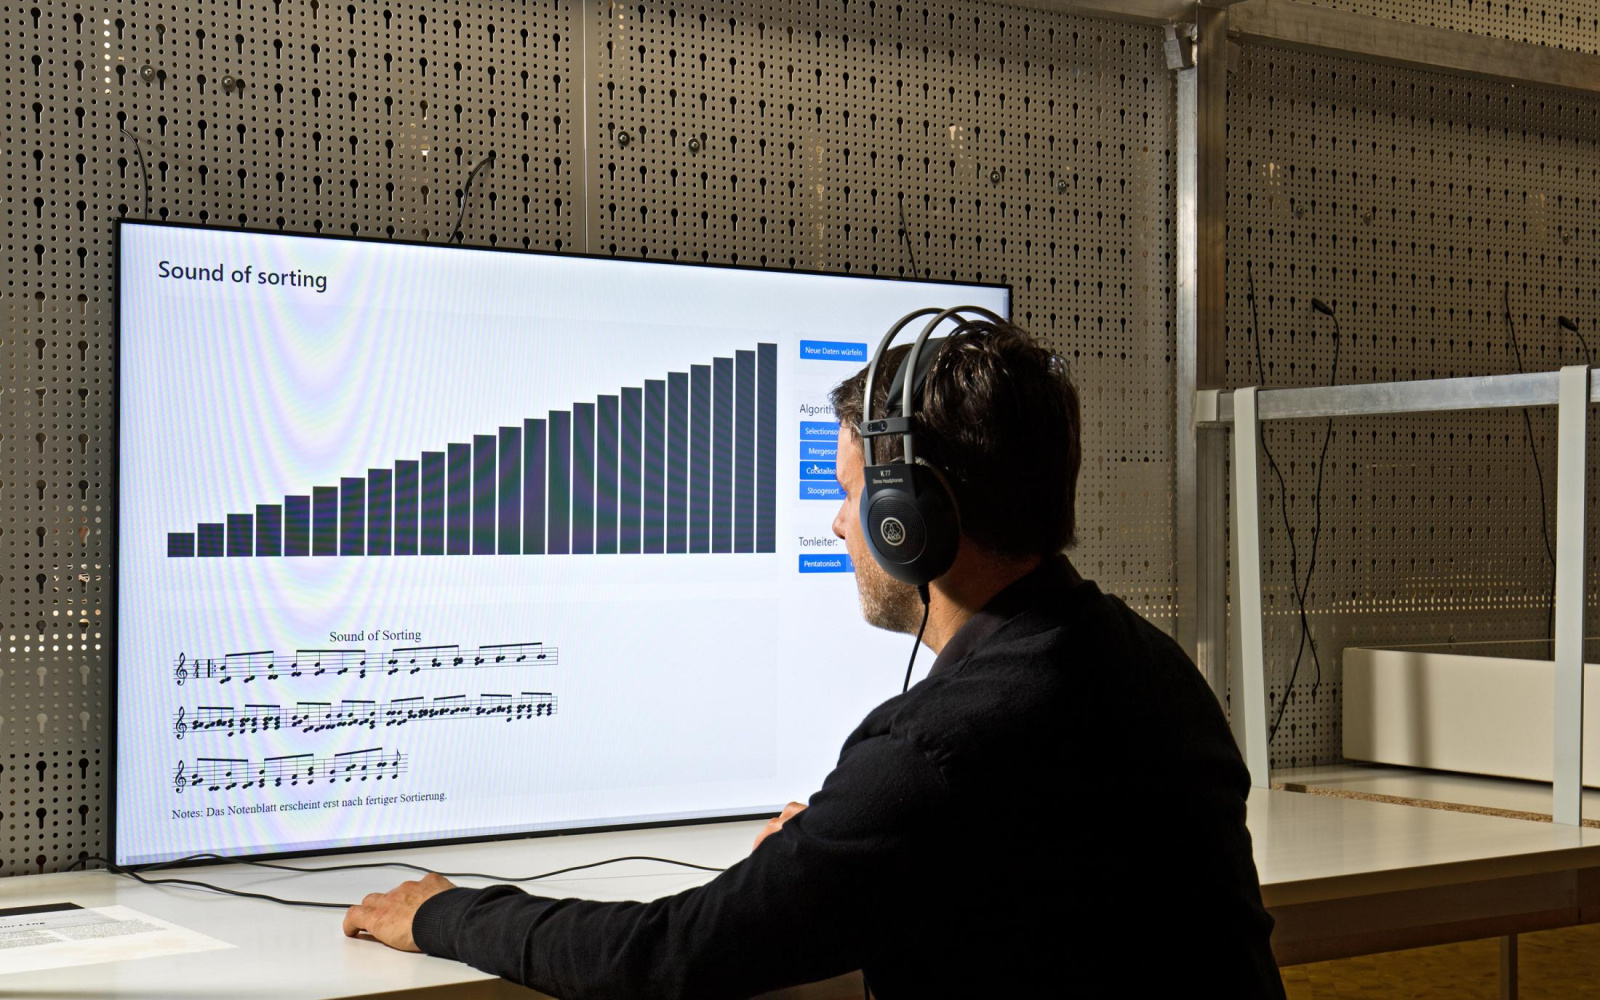 Das Bild zeigt einen sitzenden Mann mit Kopfhörern vor einem großen Bildschirm mit einem Soundsimulationsprogramm